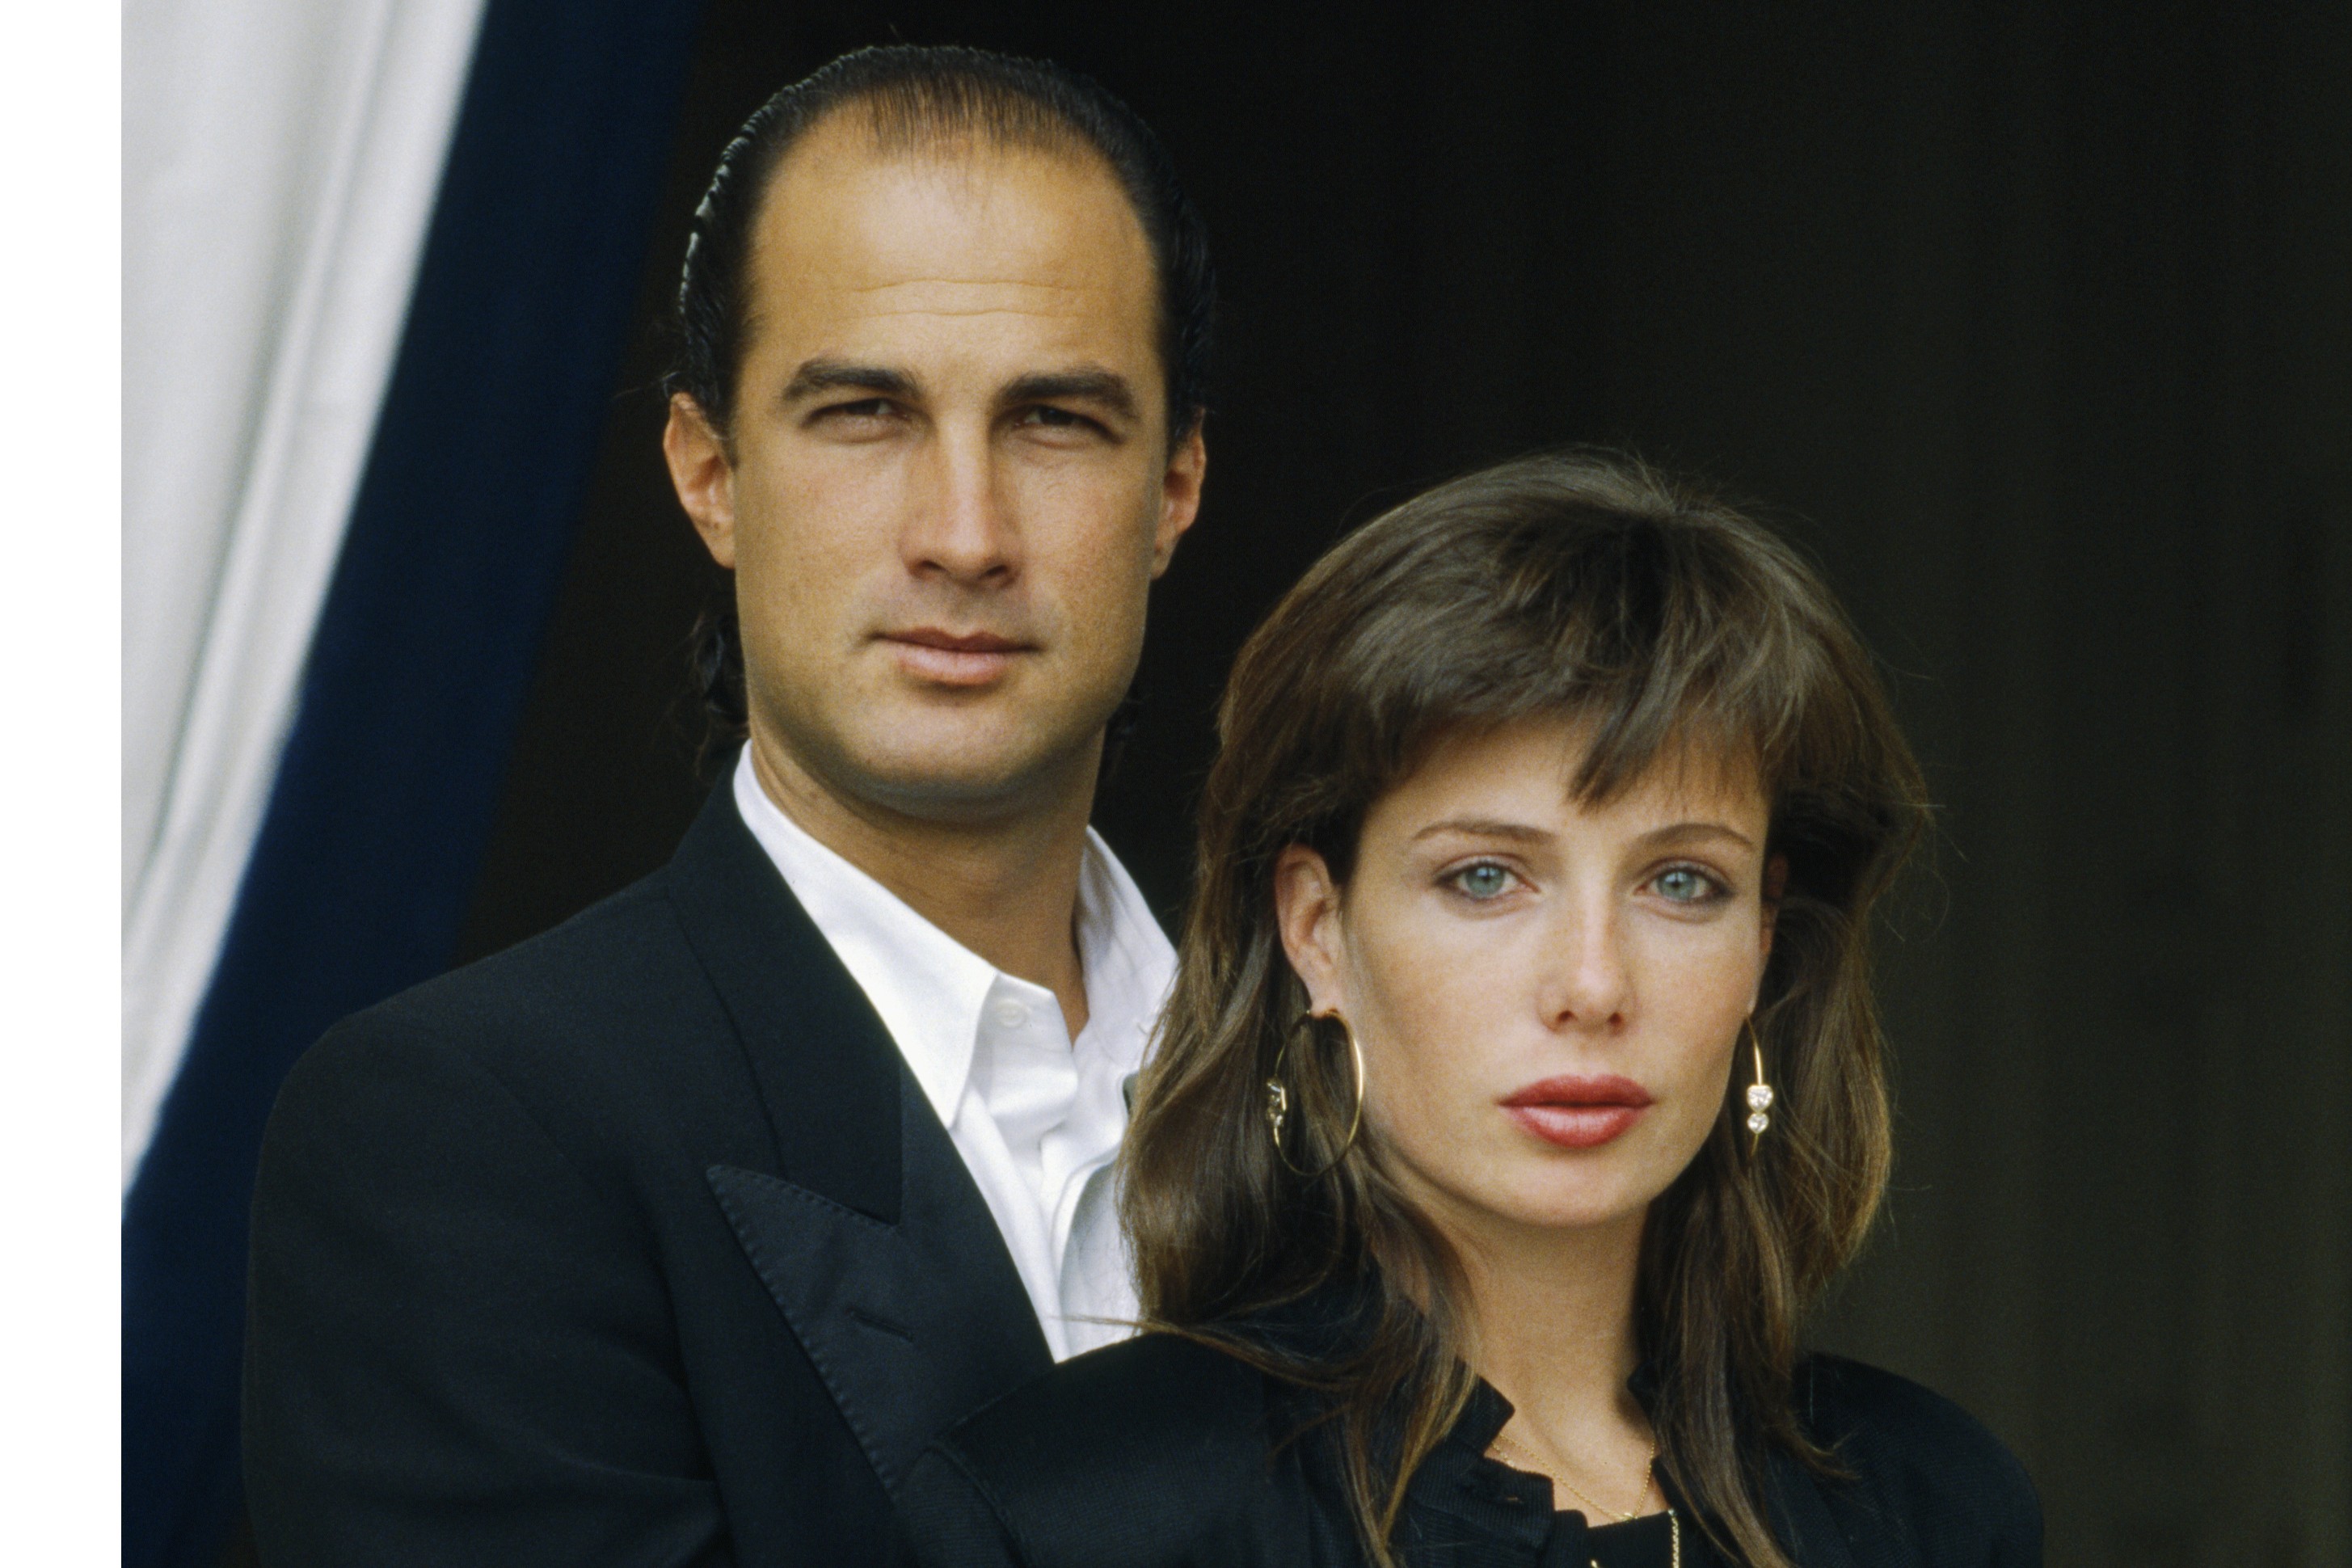 Steven Seagal e Kelly LeBrock em retrato de 1988, quando eles ainda eram casados (Foto: Getty Images)